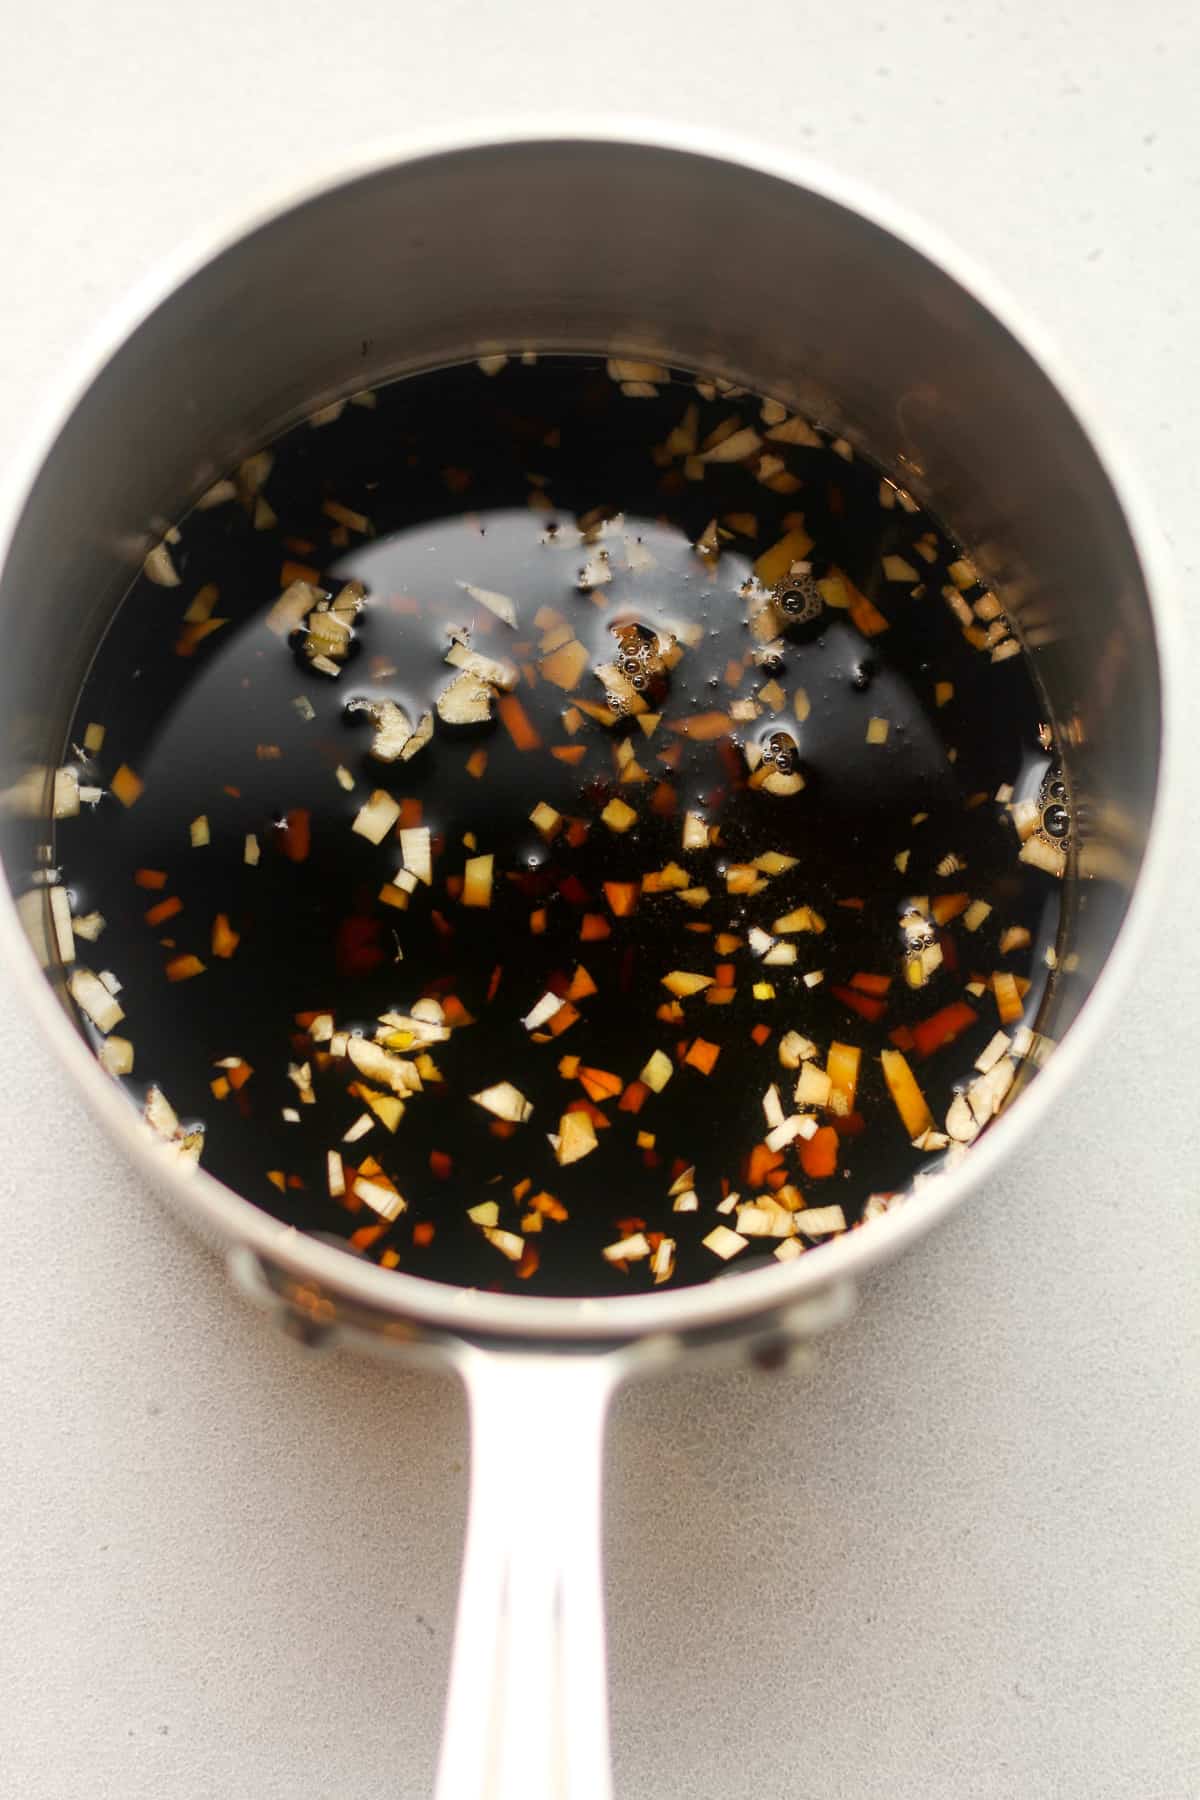 A pan of the teriyaki sauce ingredients.